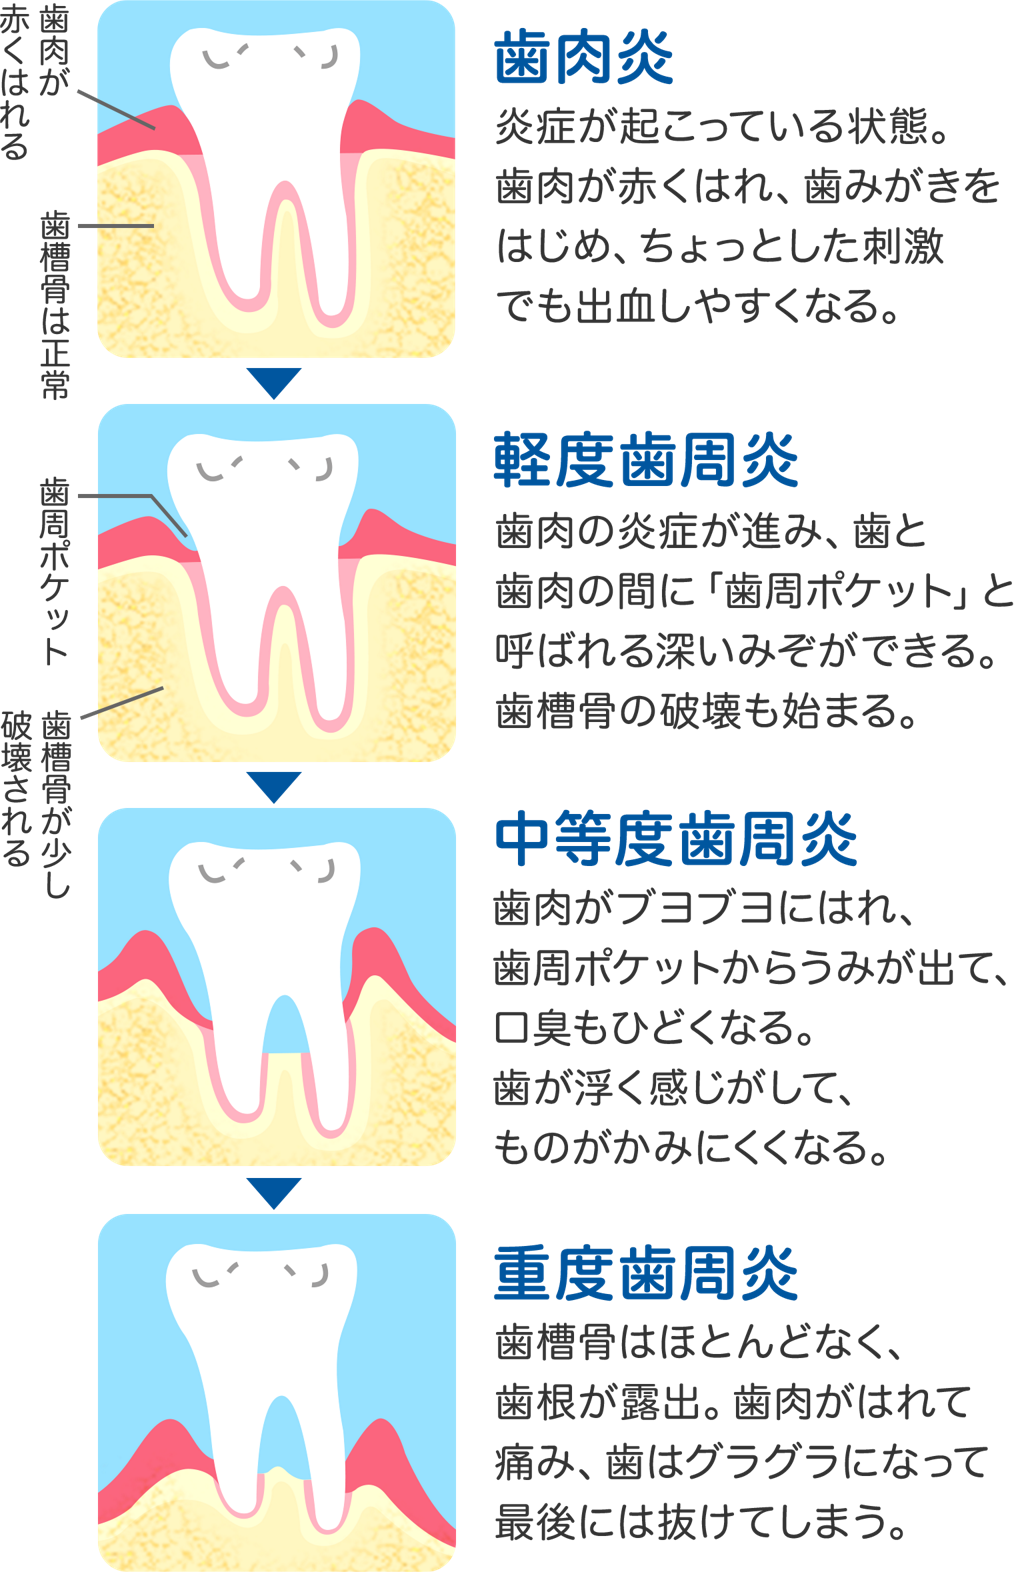 歯肉炎 歯周炎 歯の健康 基本のき オーラルケア情報 クリアクリーン 花王株式会社